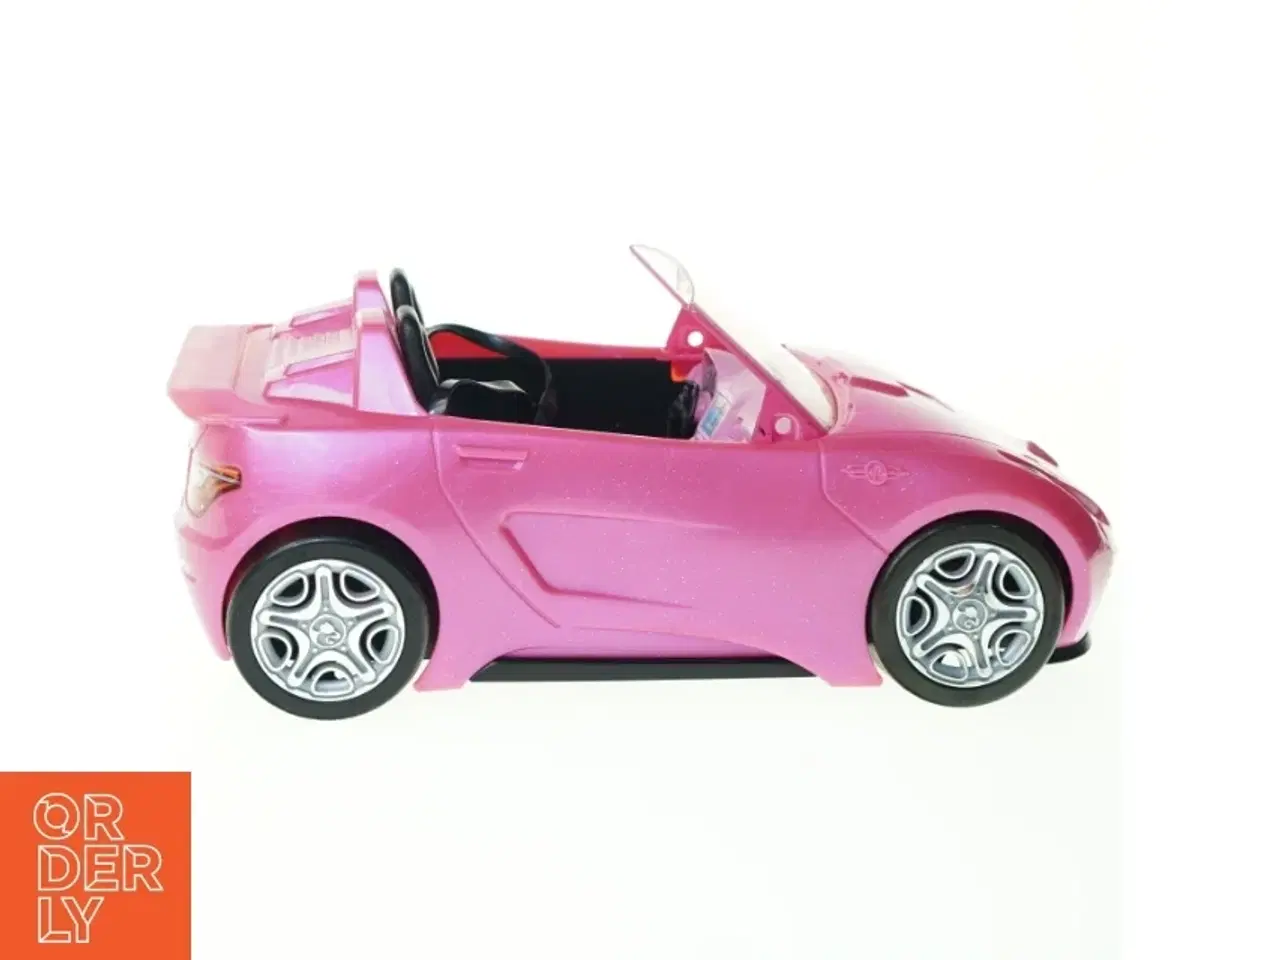 Billede 1 - Barbie bil fra Mattel (str. 33 x 20 x 12 cm)